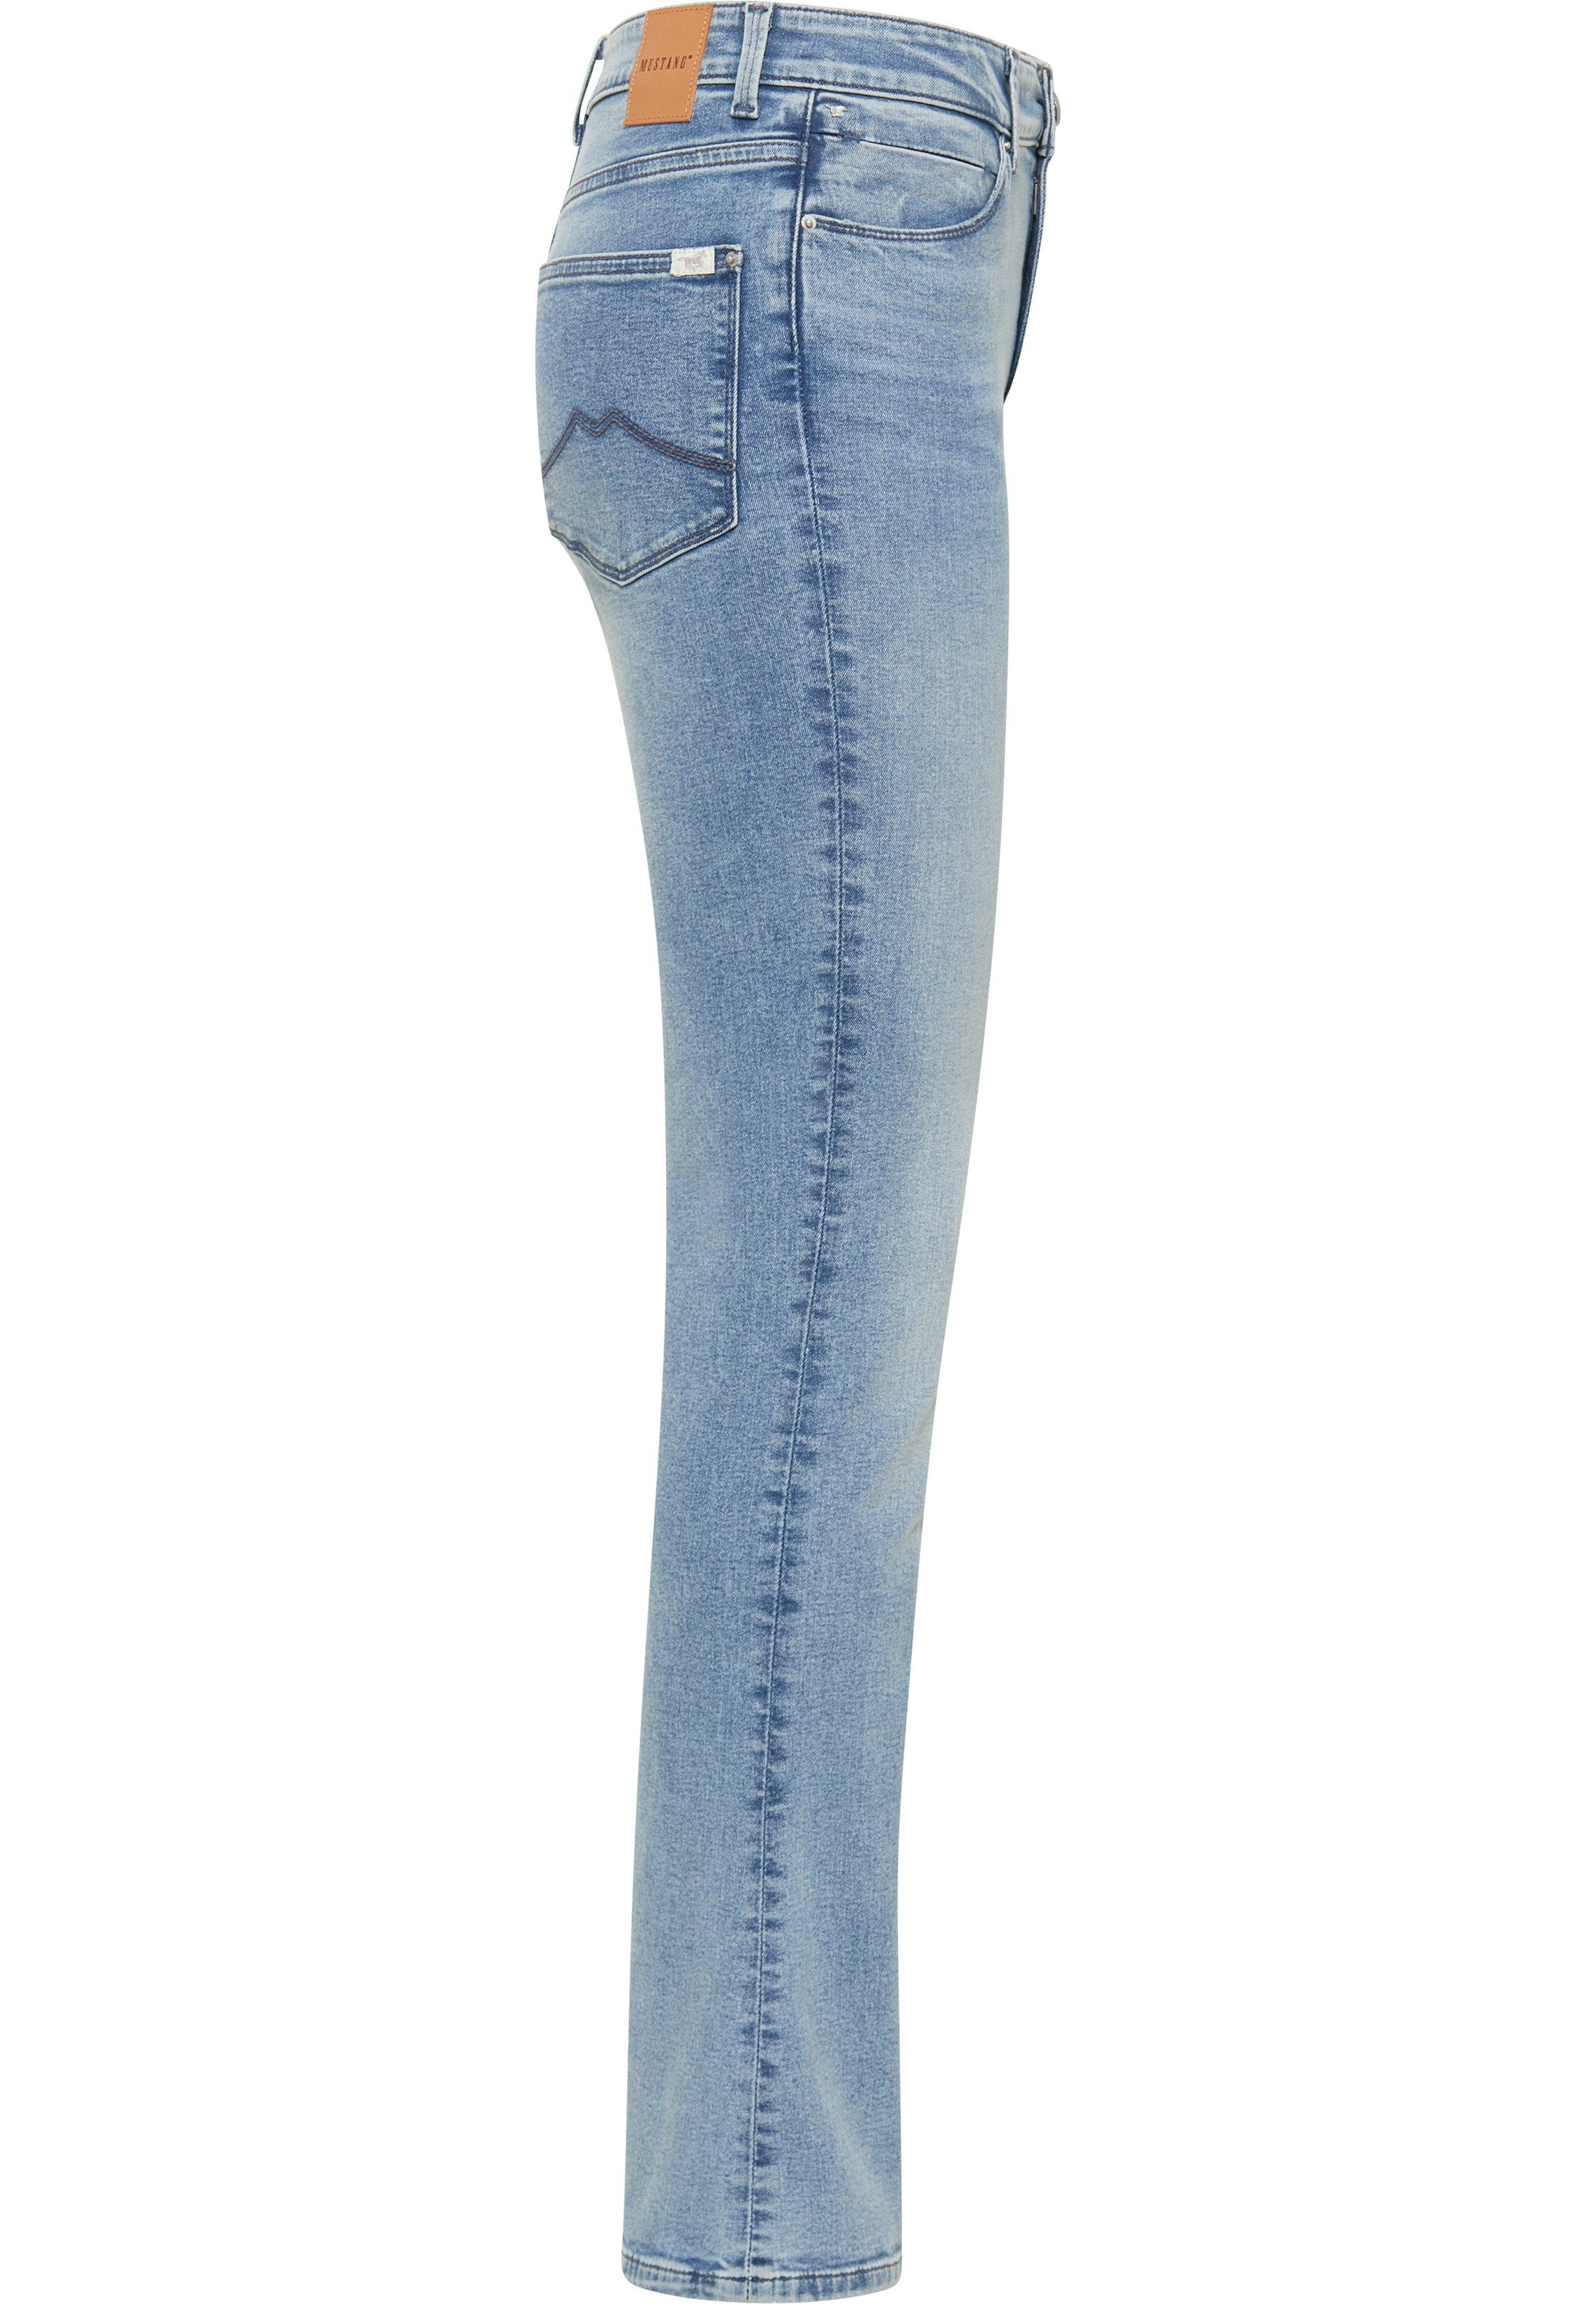 MUSTANG Skinny-fit-Jeans Flared Style Georgia Skinny hellblau-5000203